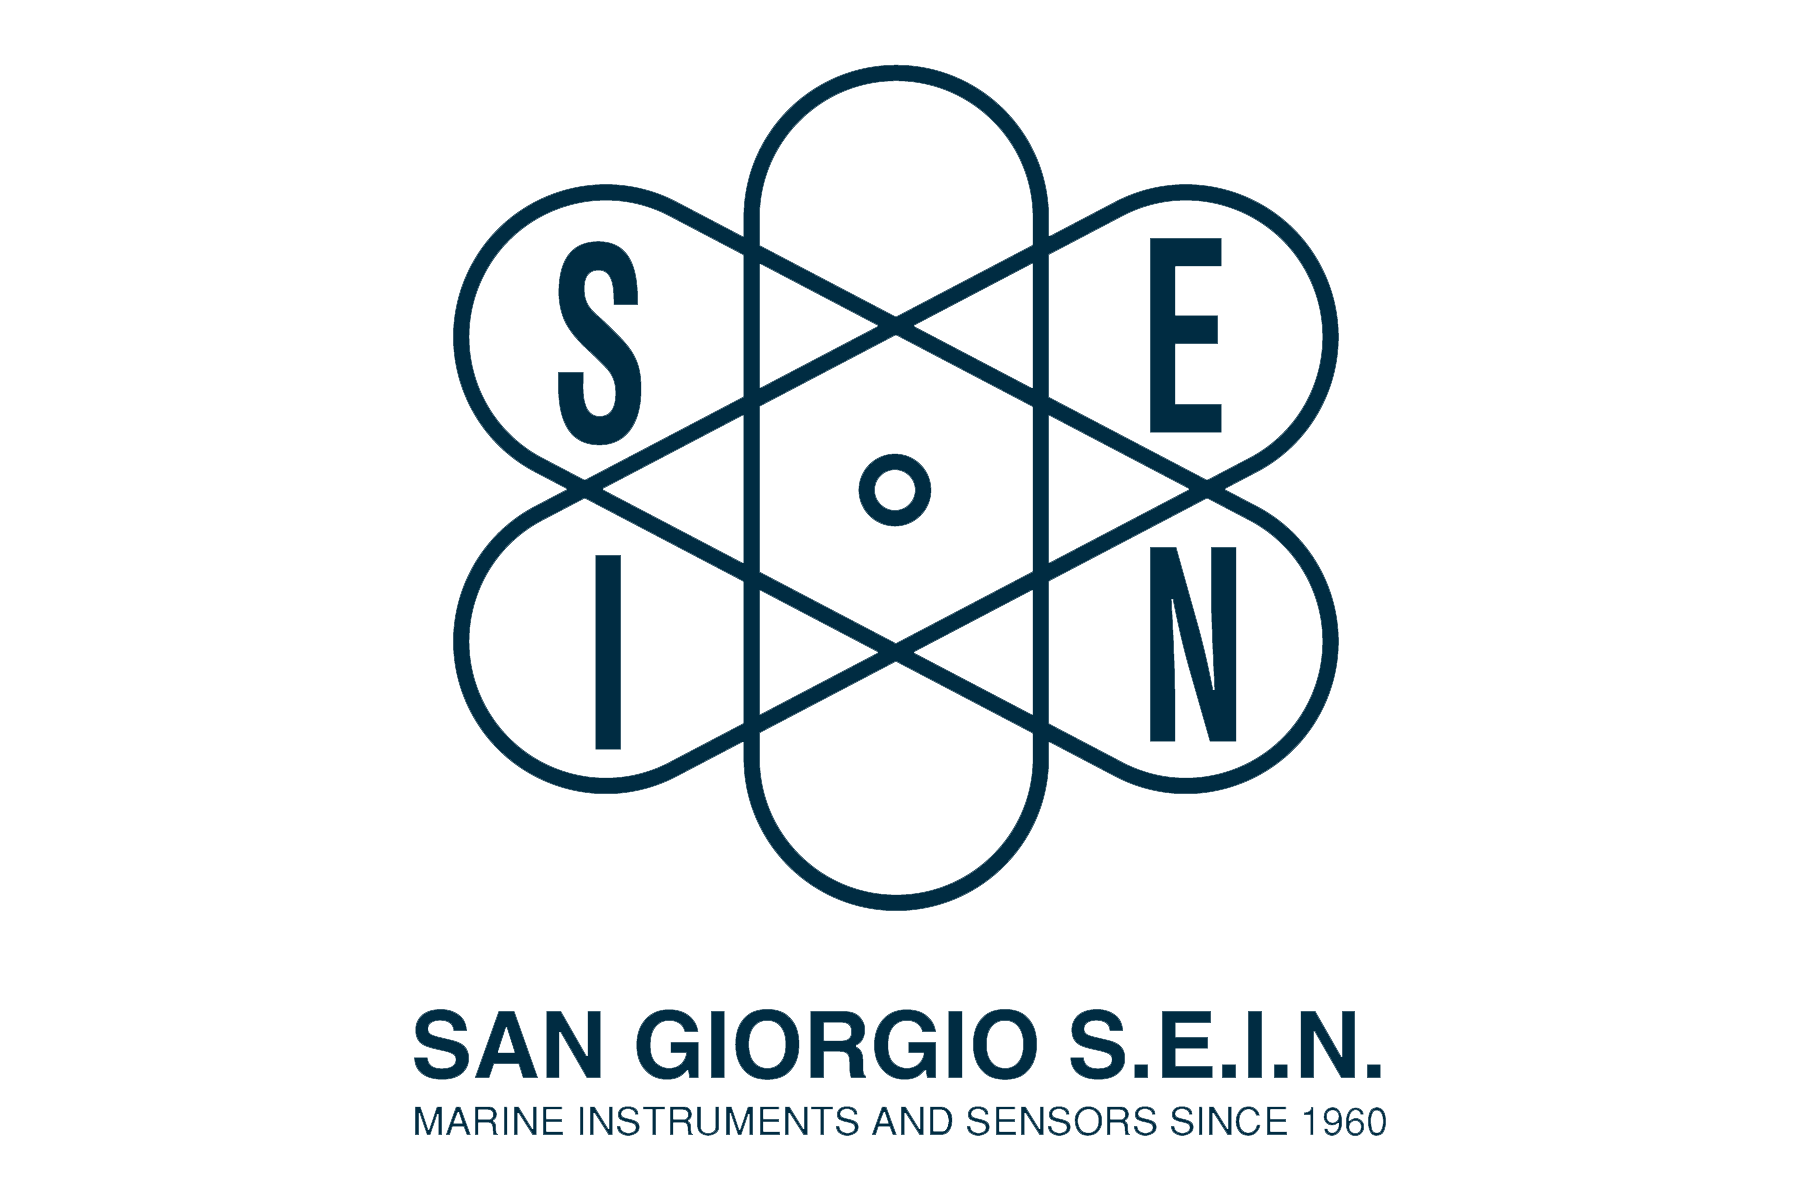 San Giorgio S.E.I.N.